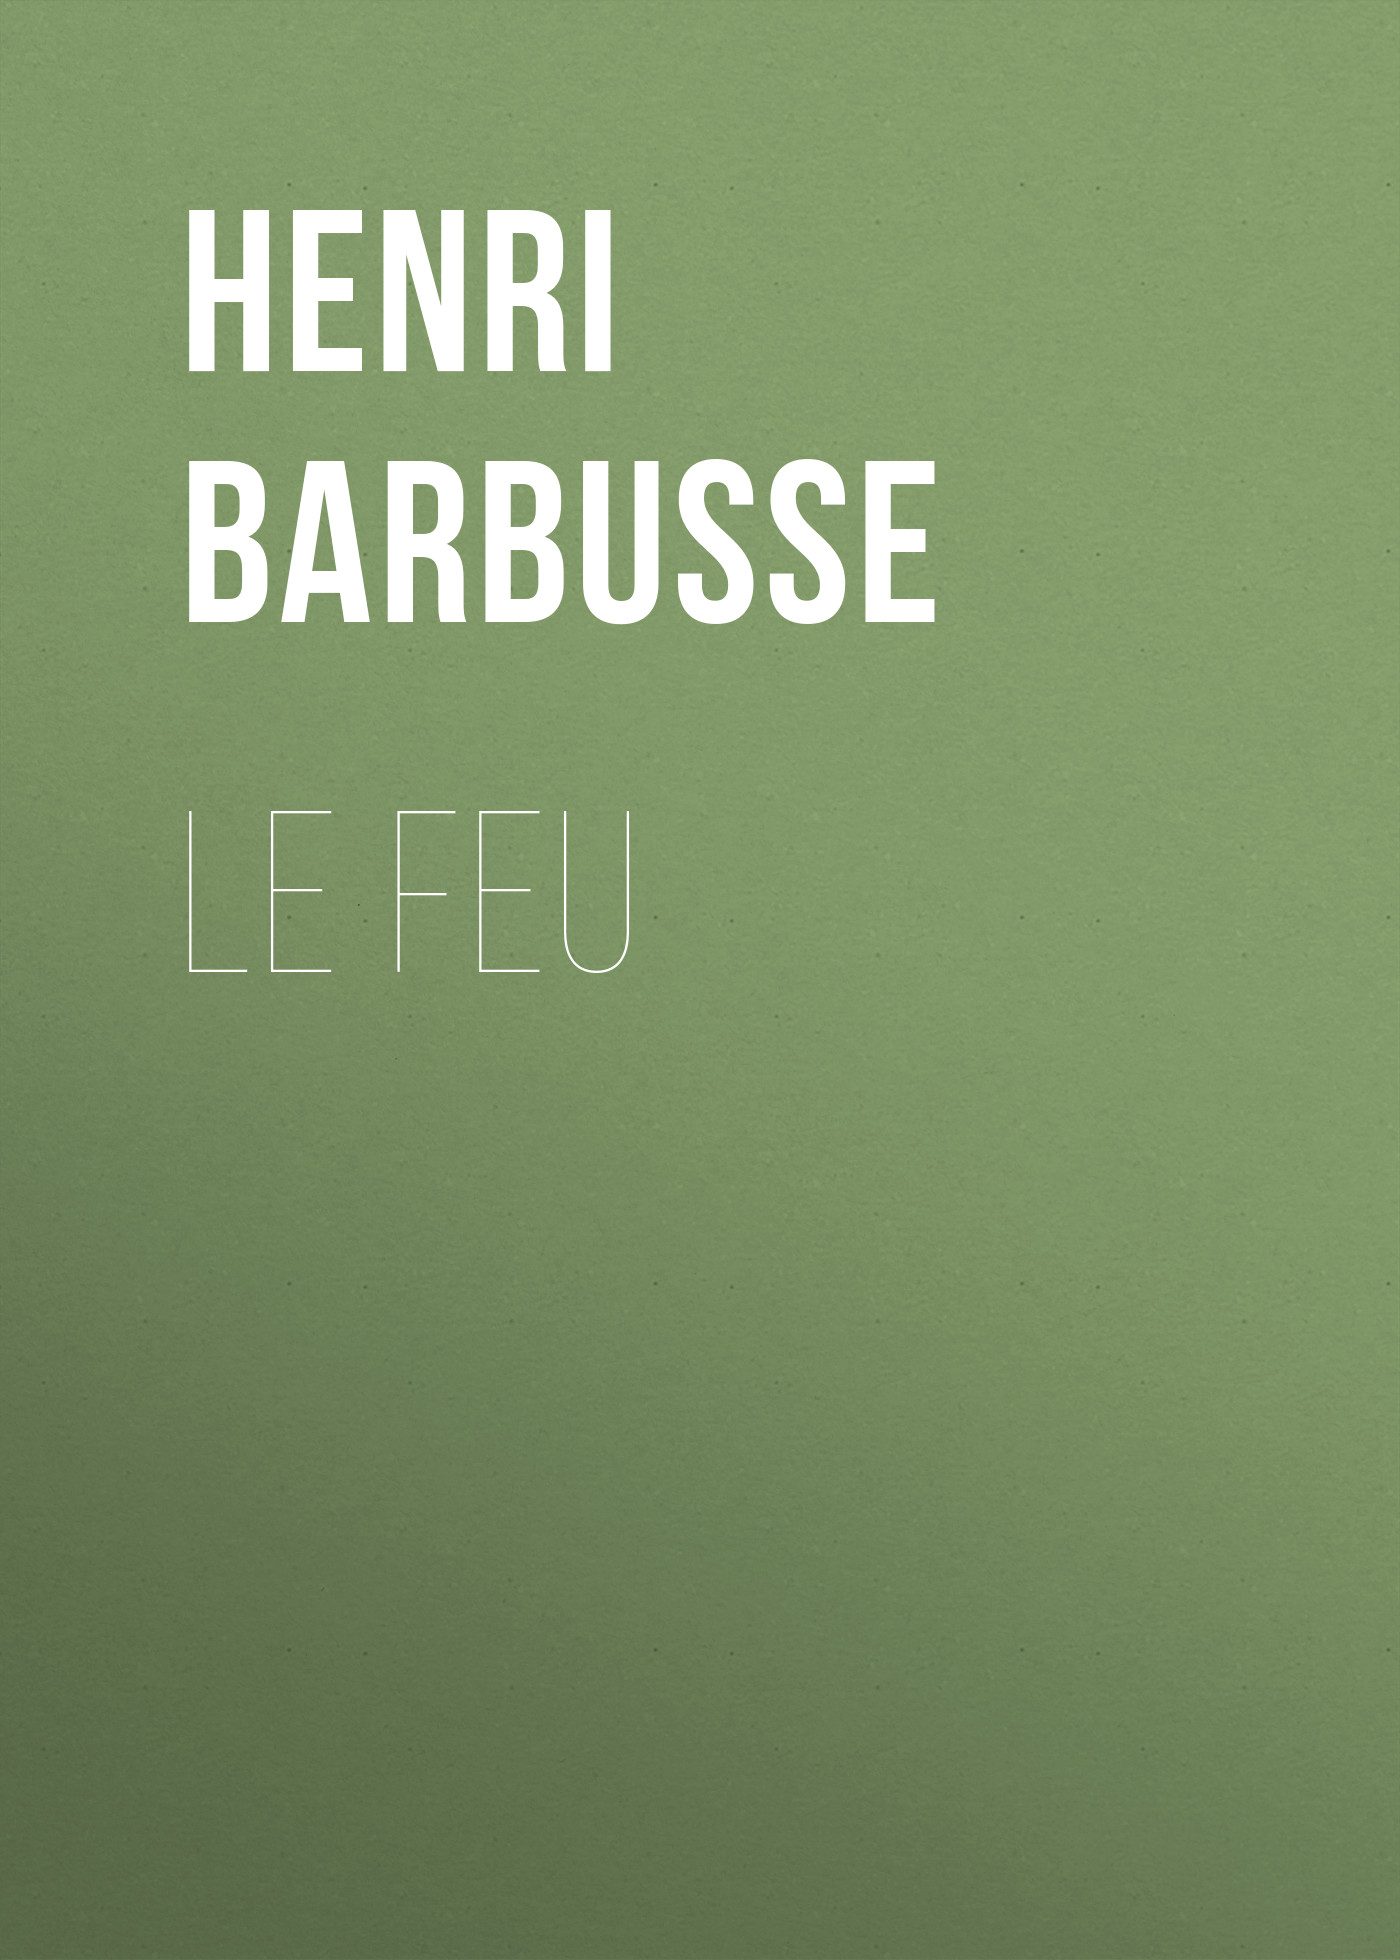 Книга Le feu из серии , созданная Henri Barbusse, может относится к жанру Зарубежная старинная литература, Зарубежная классика. Стоимость электронной книги Le feu с идентификатором 24173516 составляет 0 руб.